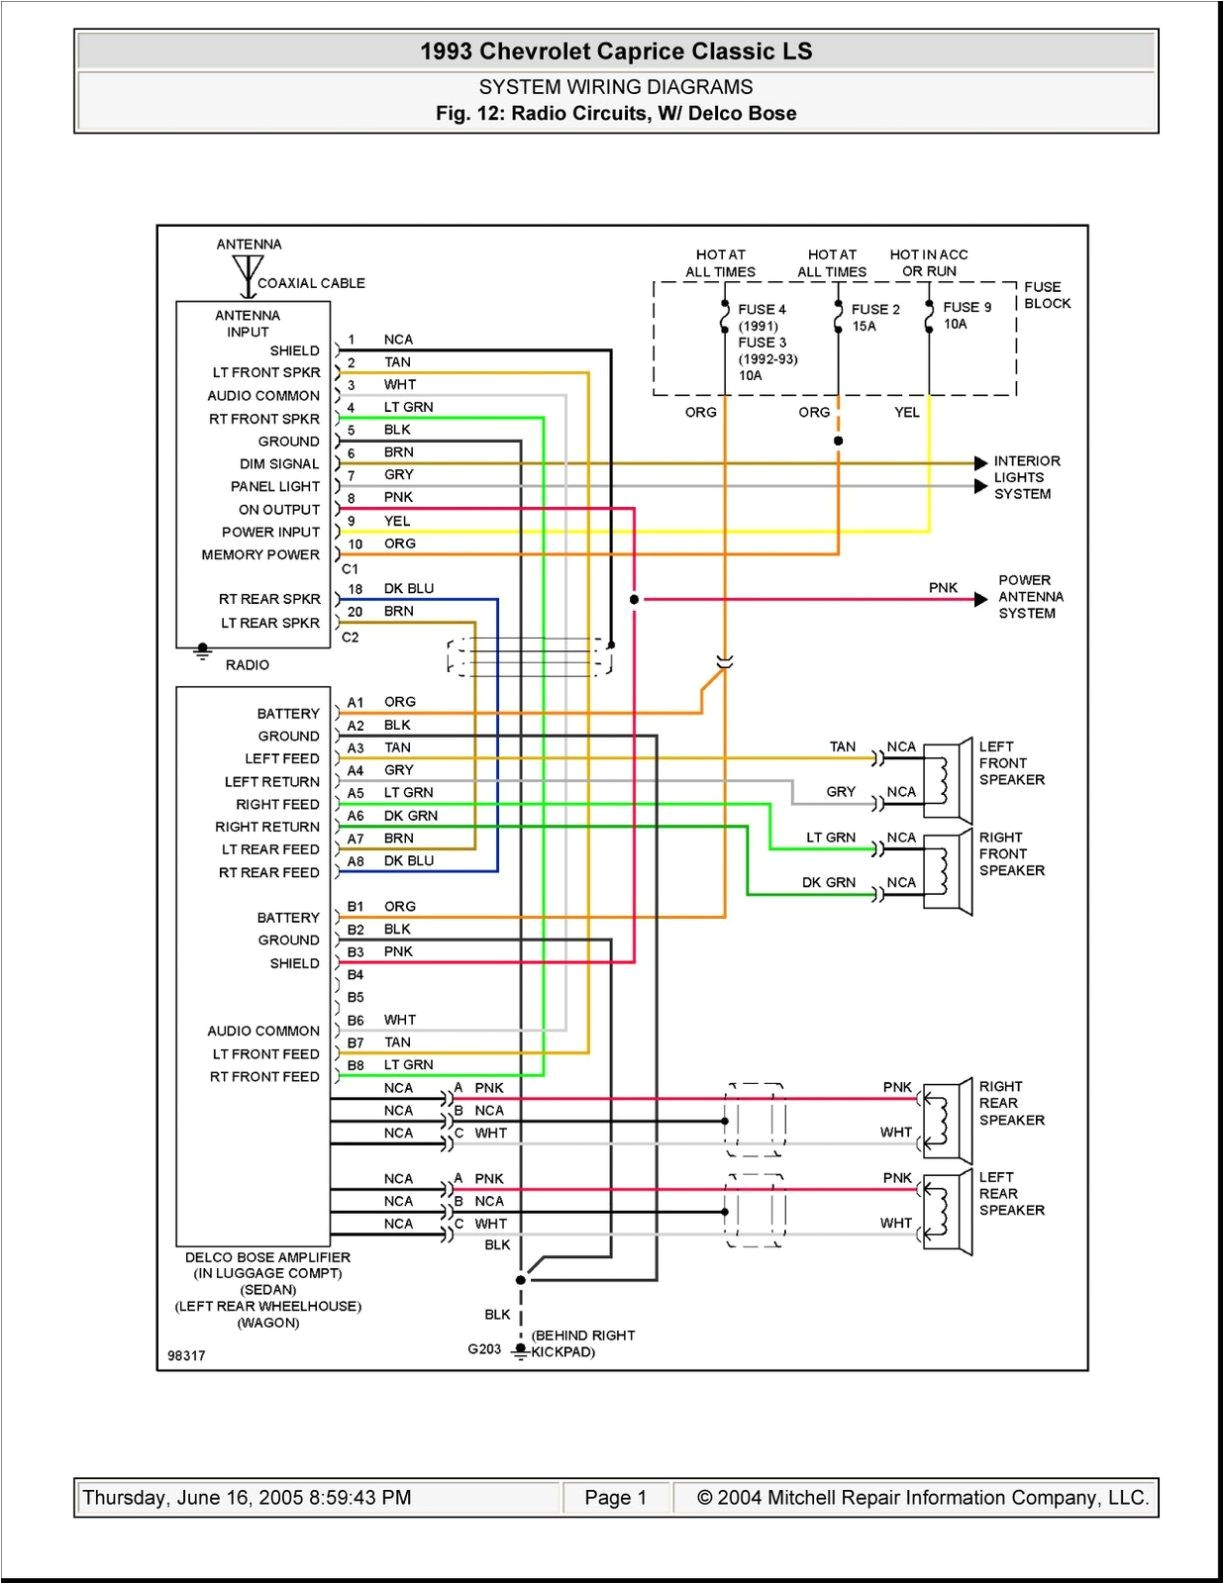 audi bose wiring diagram wiring diagram expert audi bose wiring diagram audi bose wiring diagram